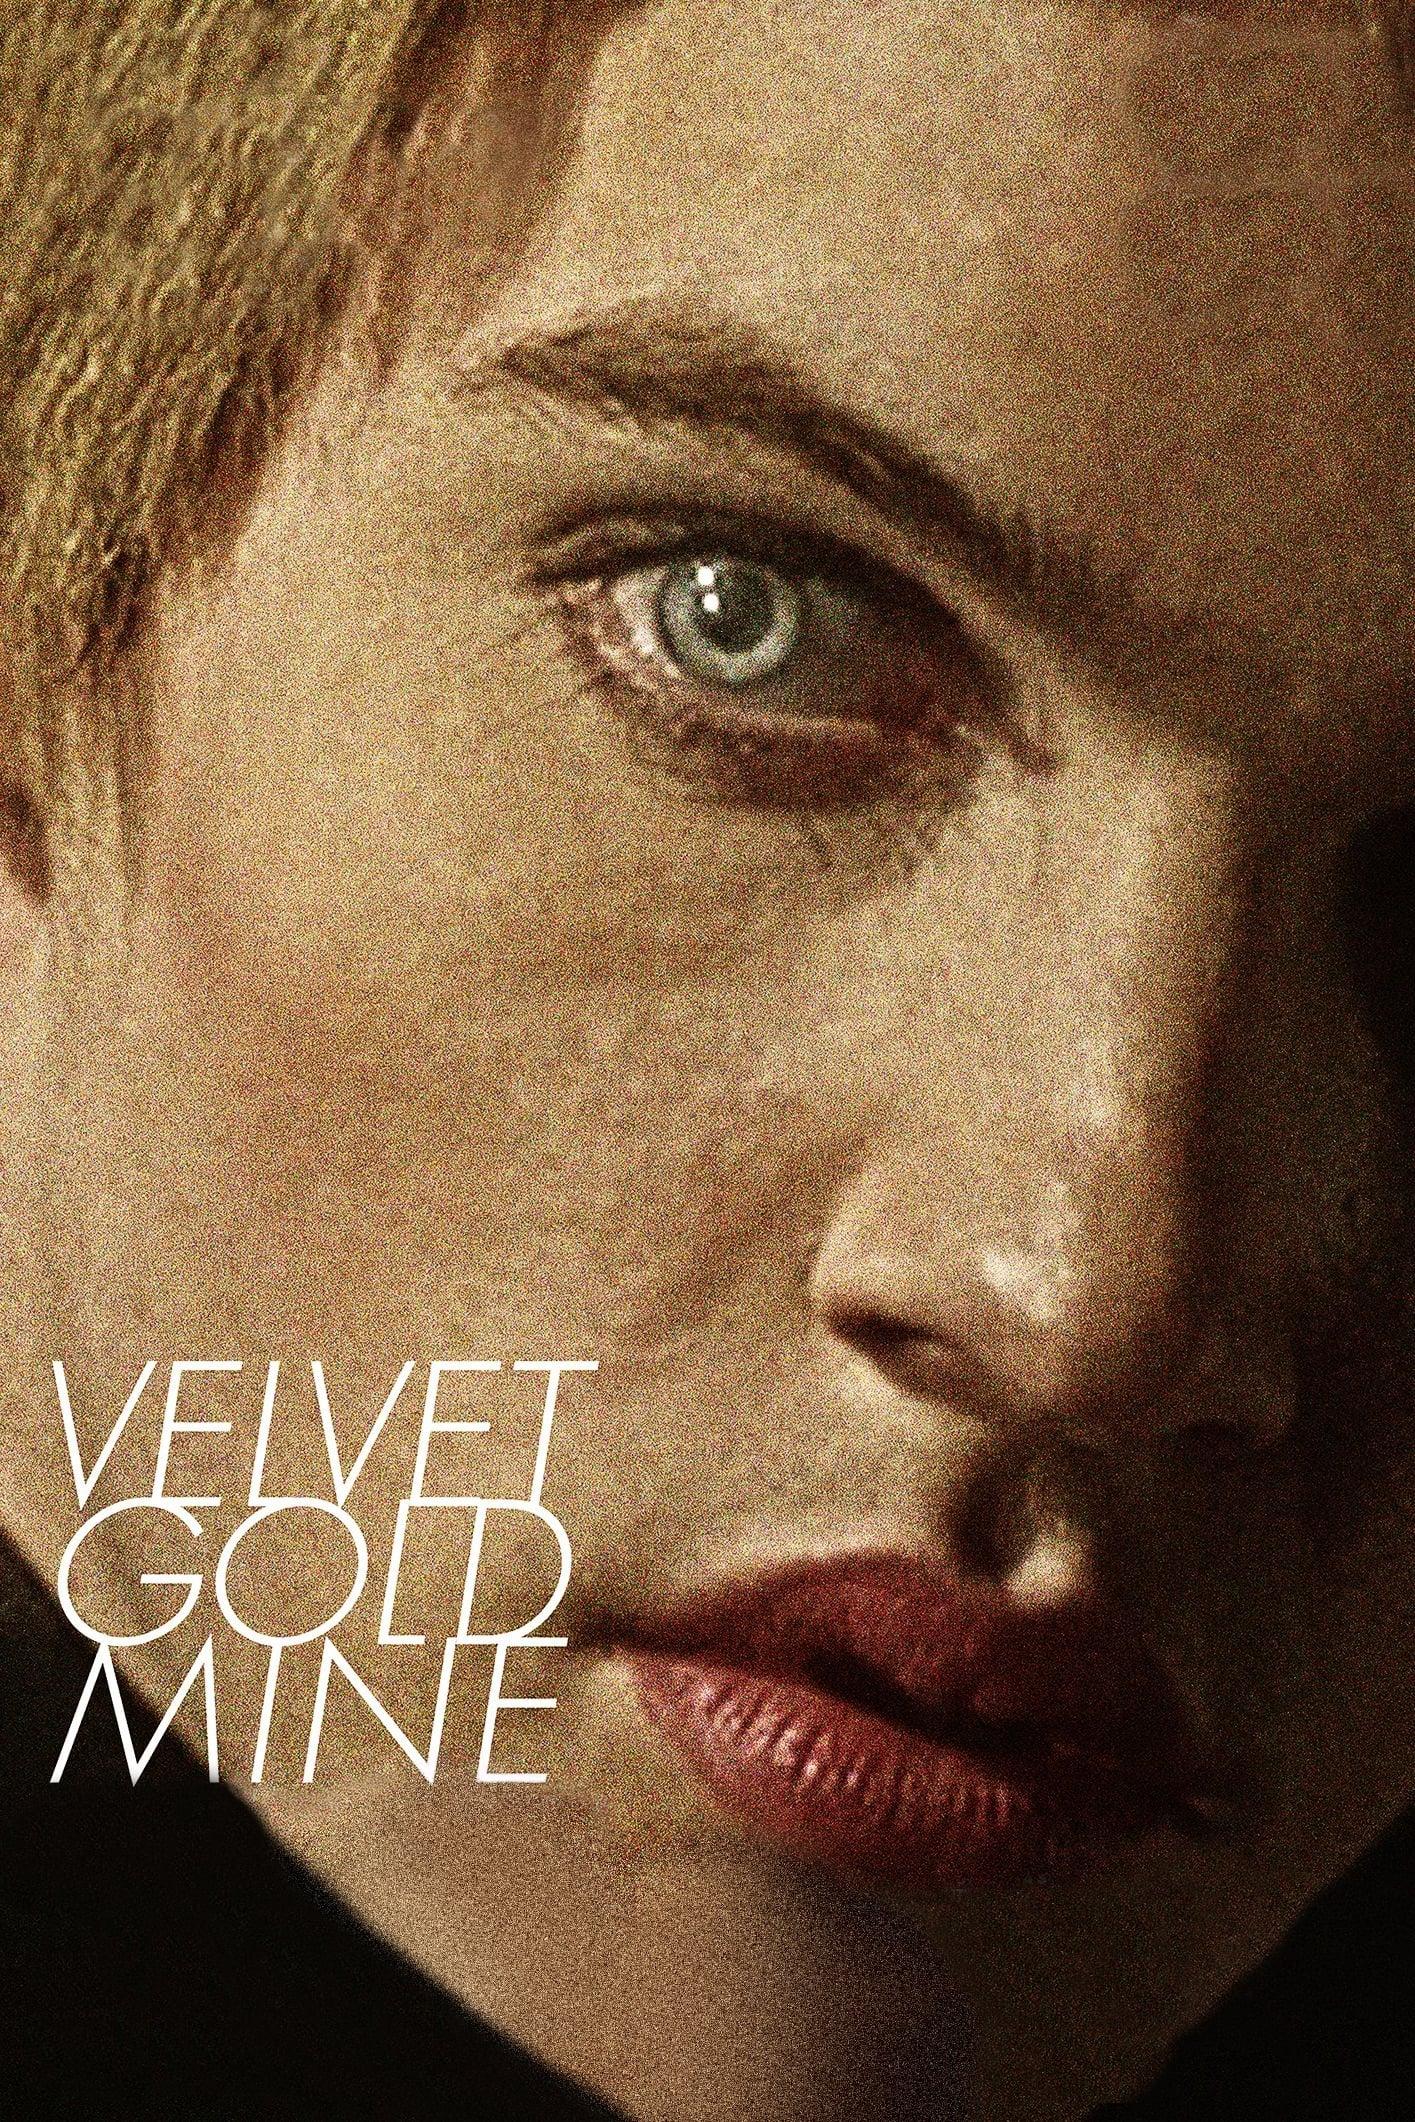 Velvet Goldmine poster